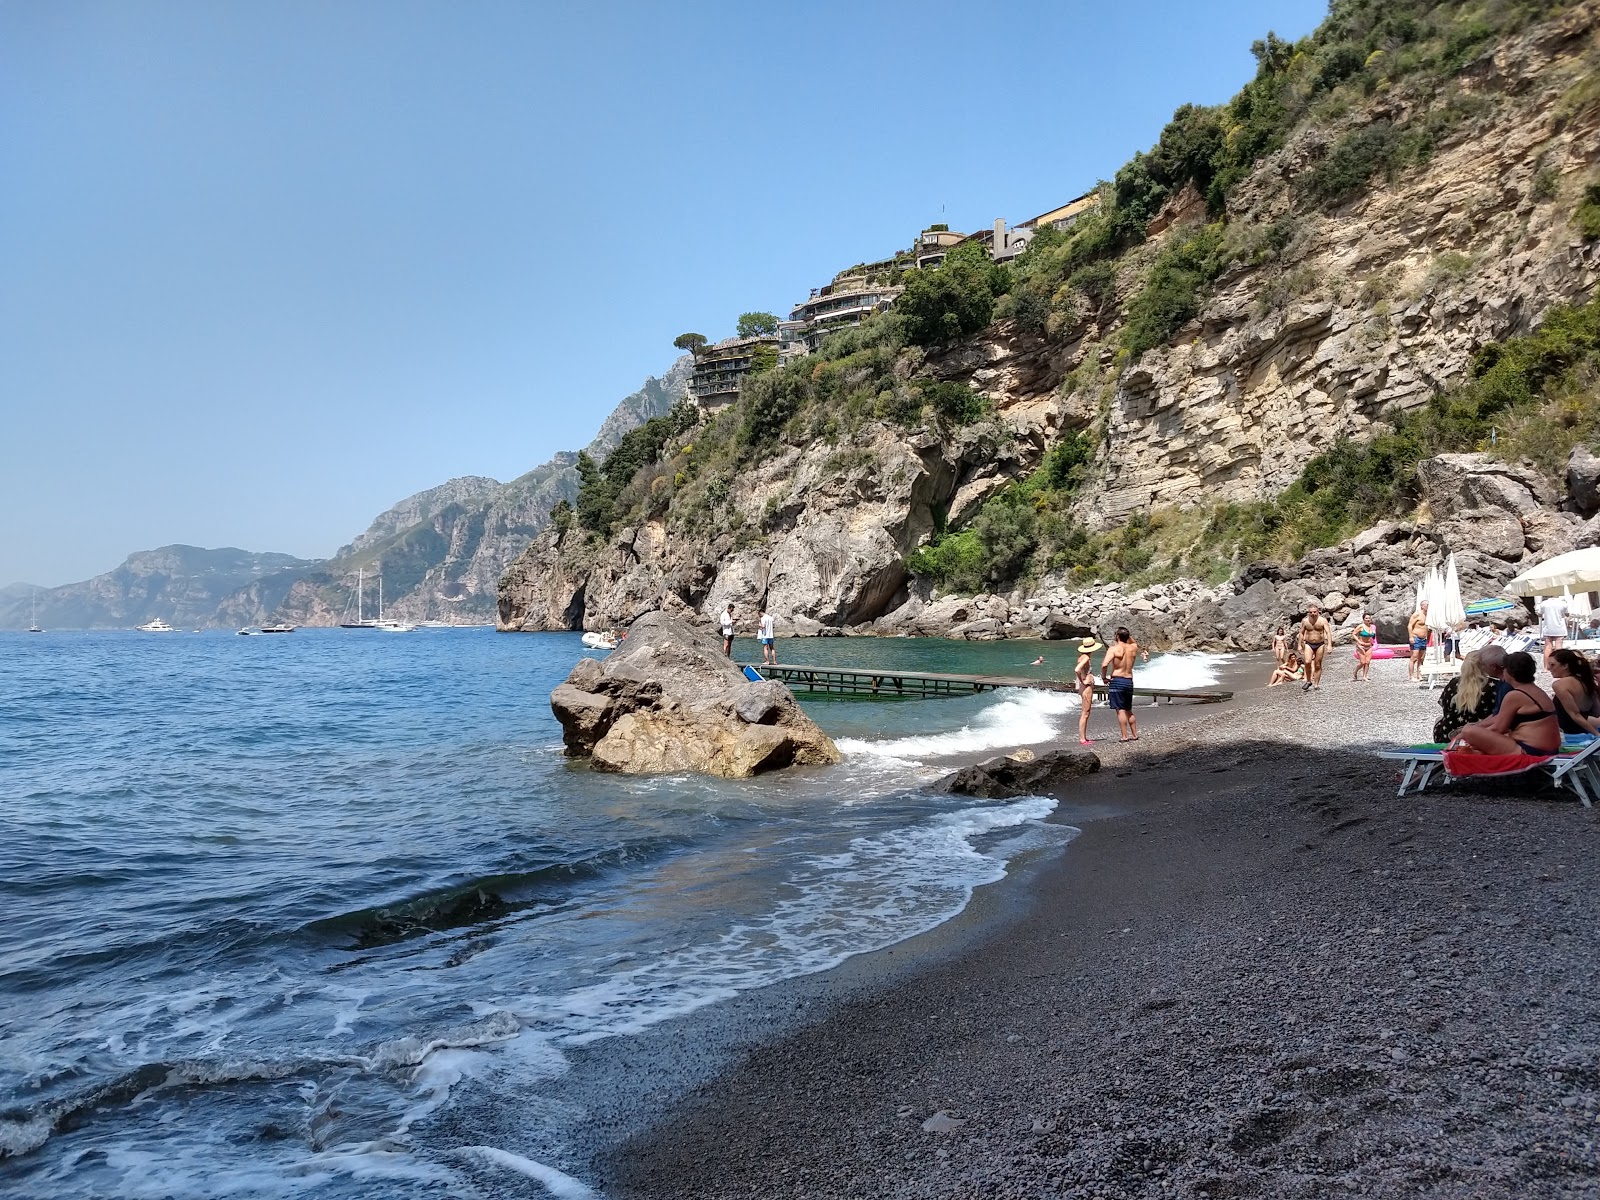 Photo of Spiaggia di via Laurito with gray fine pebble surface